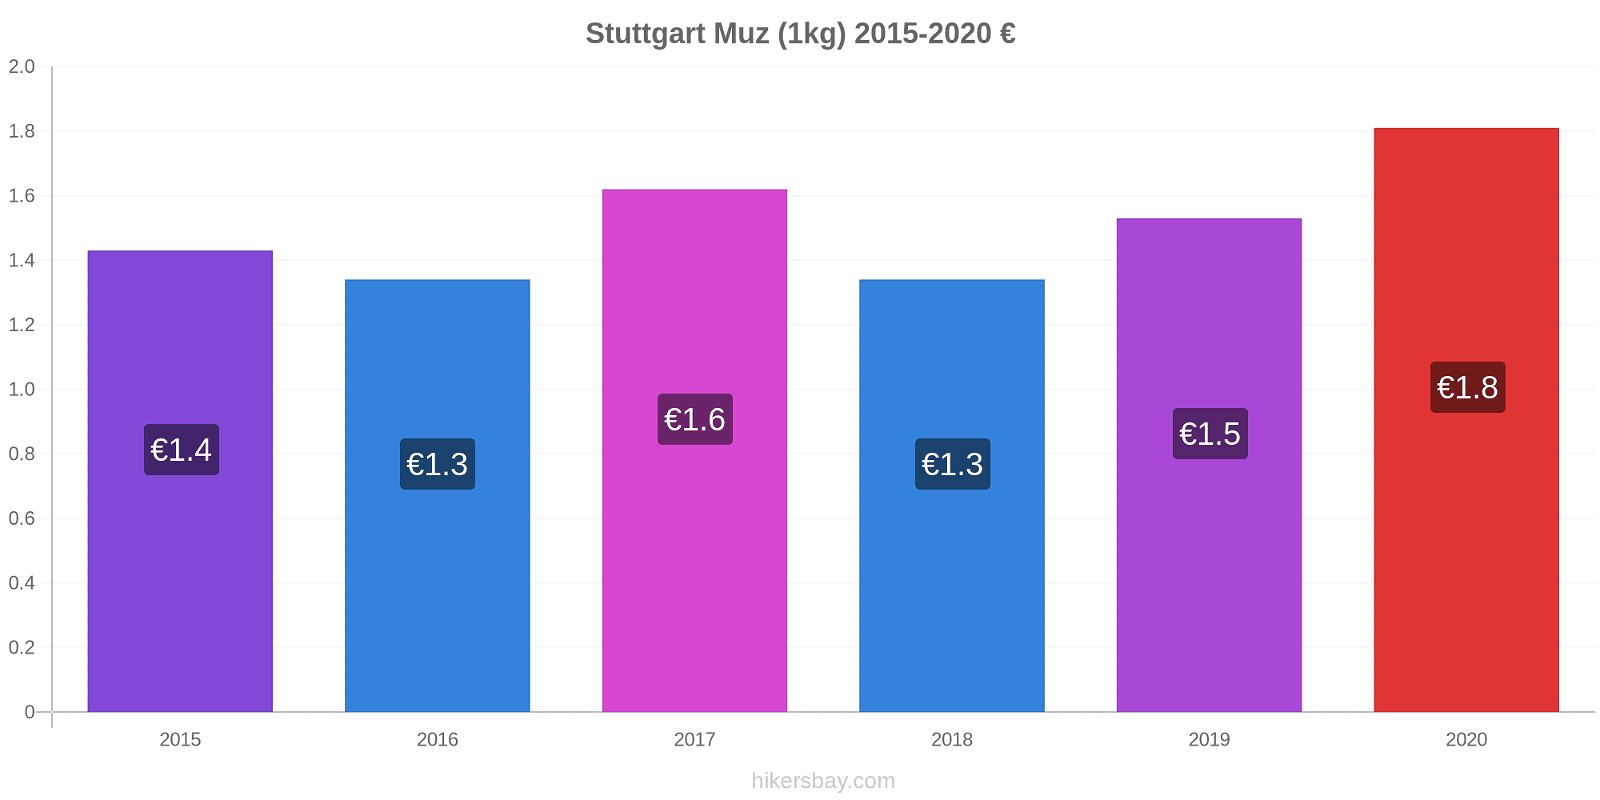 Stuttgart fiyat değişiklikleri Muz (1kg) hikersbay.com